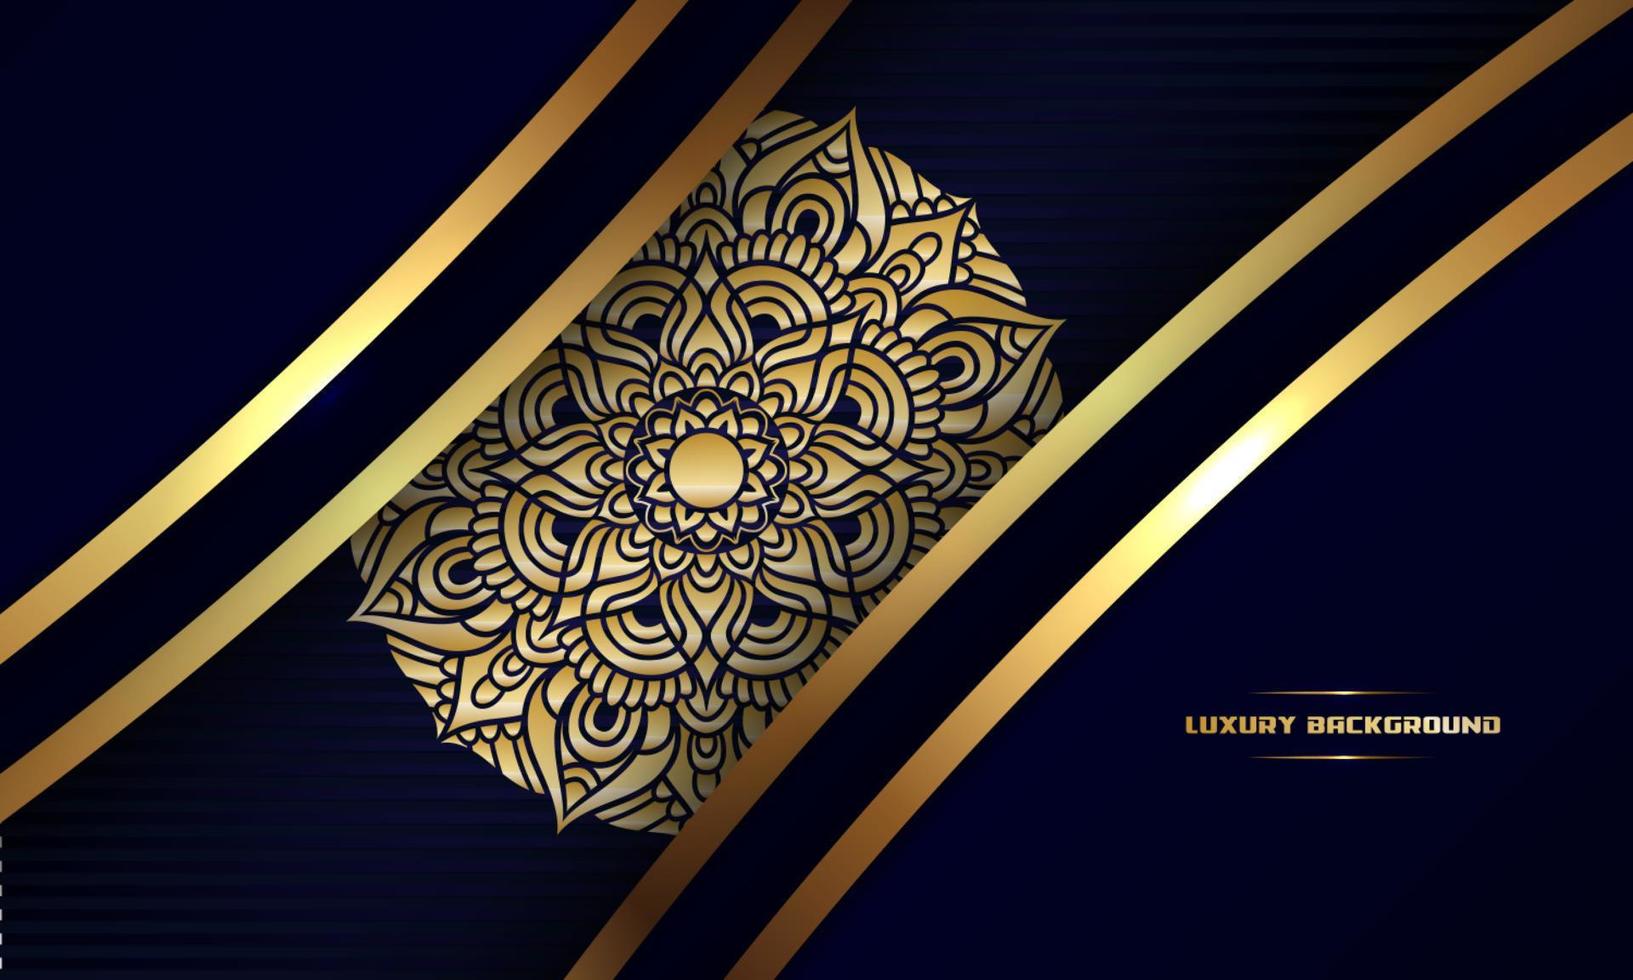 luxushintergrund, goldfarbenes mandala-ornamentliniendesign, isoliert auf dunkelblauem hintergrund, hochzeitskarte, einladung, islamisches ramadan-konzept, banner-cover-hintergrund usw., vektorillustration vektor